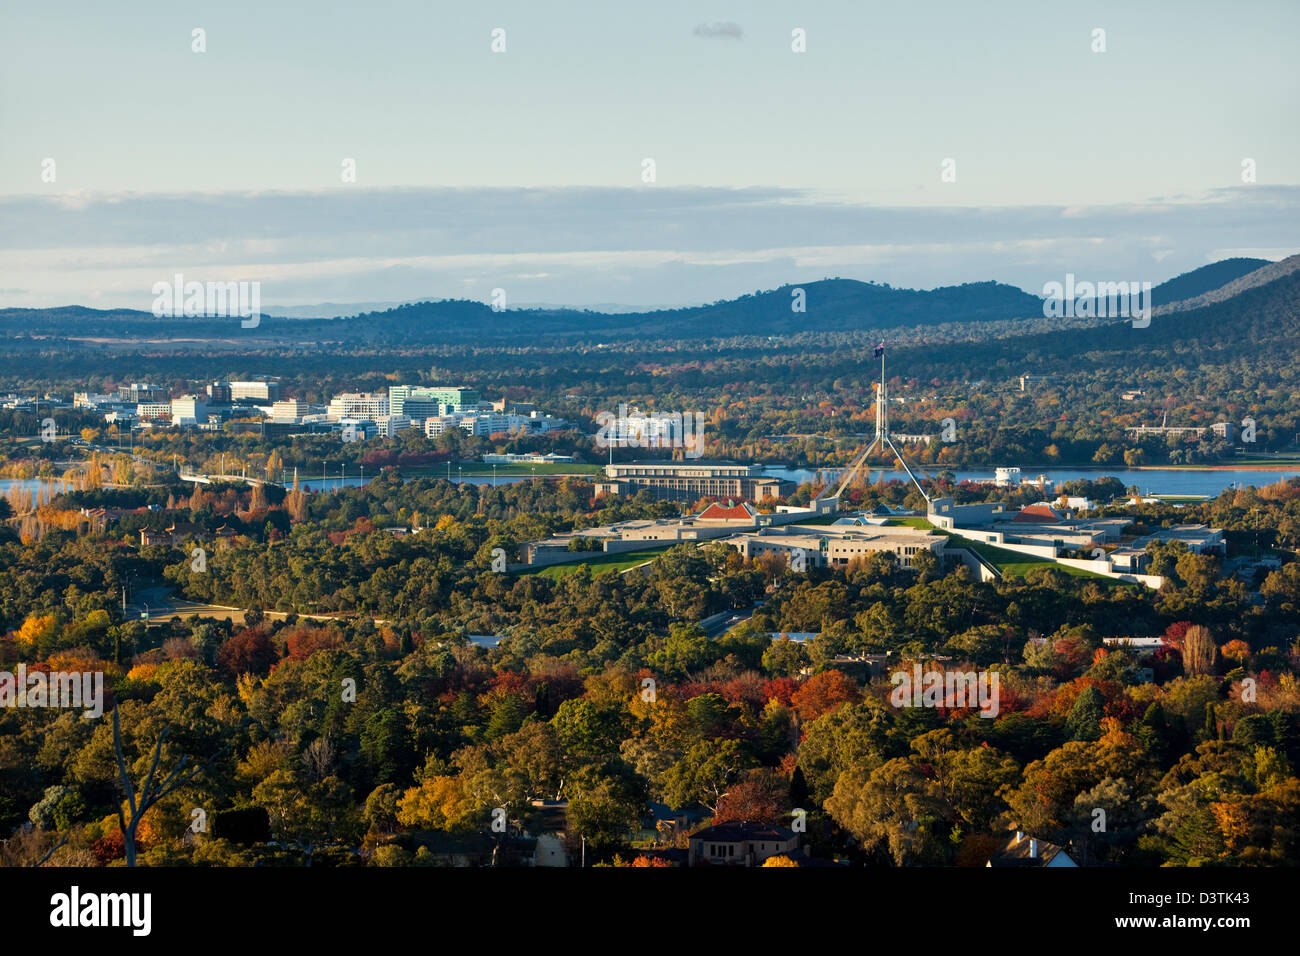 Vue sur le Parlement et sur les toits de la ville de Red Hill Lookout. Canberra, Territoire de la capitale australienne (ACT), l'Australie Banque D'Images